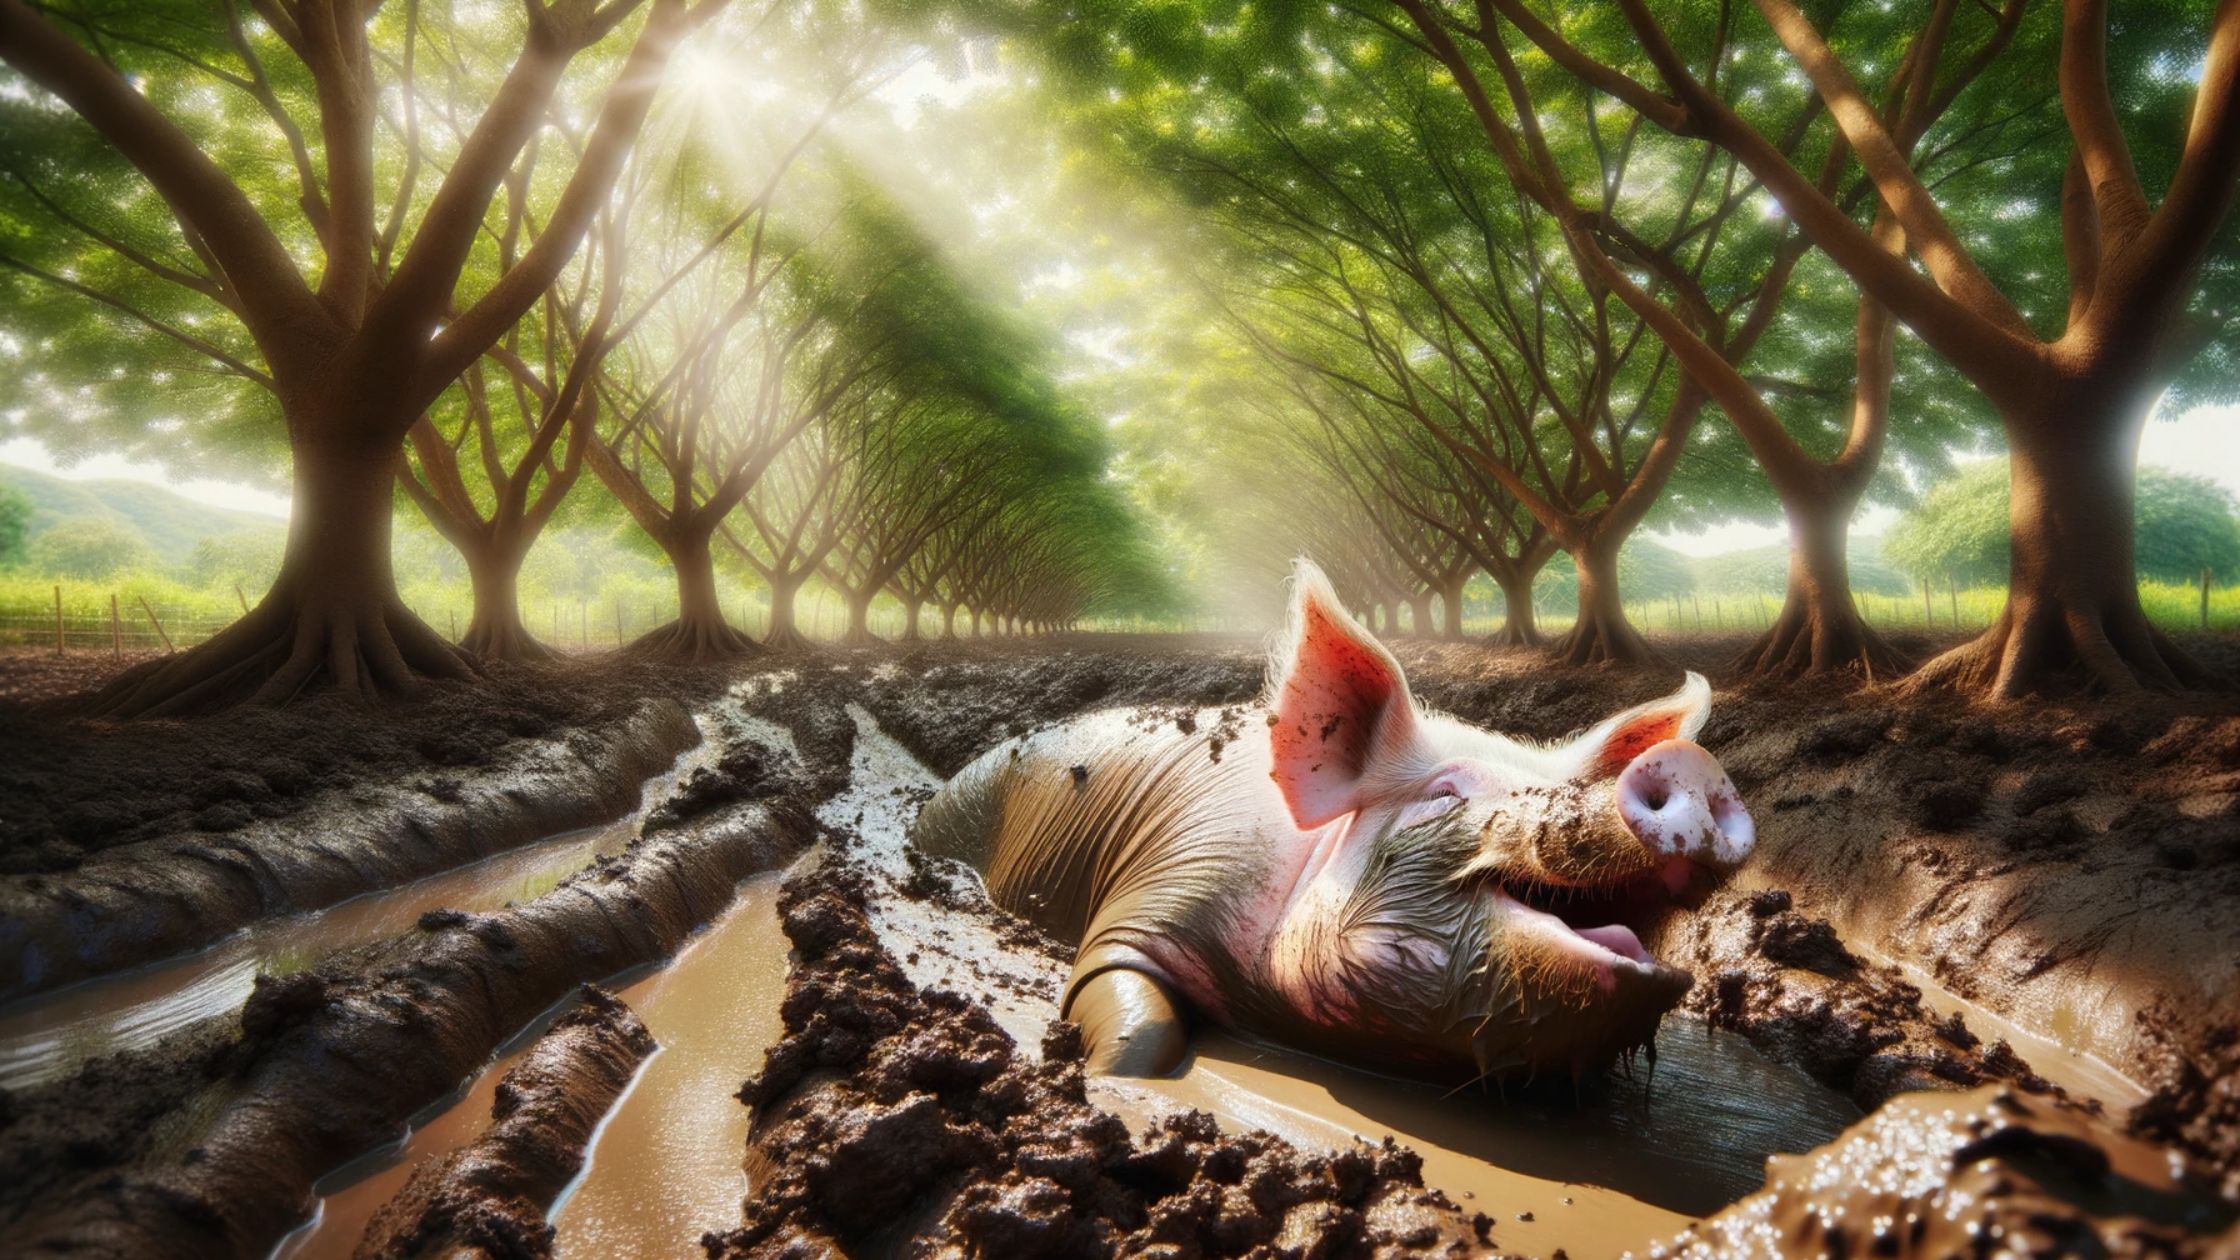 pig sun bathing in mud